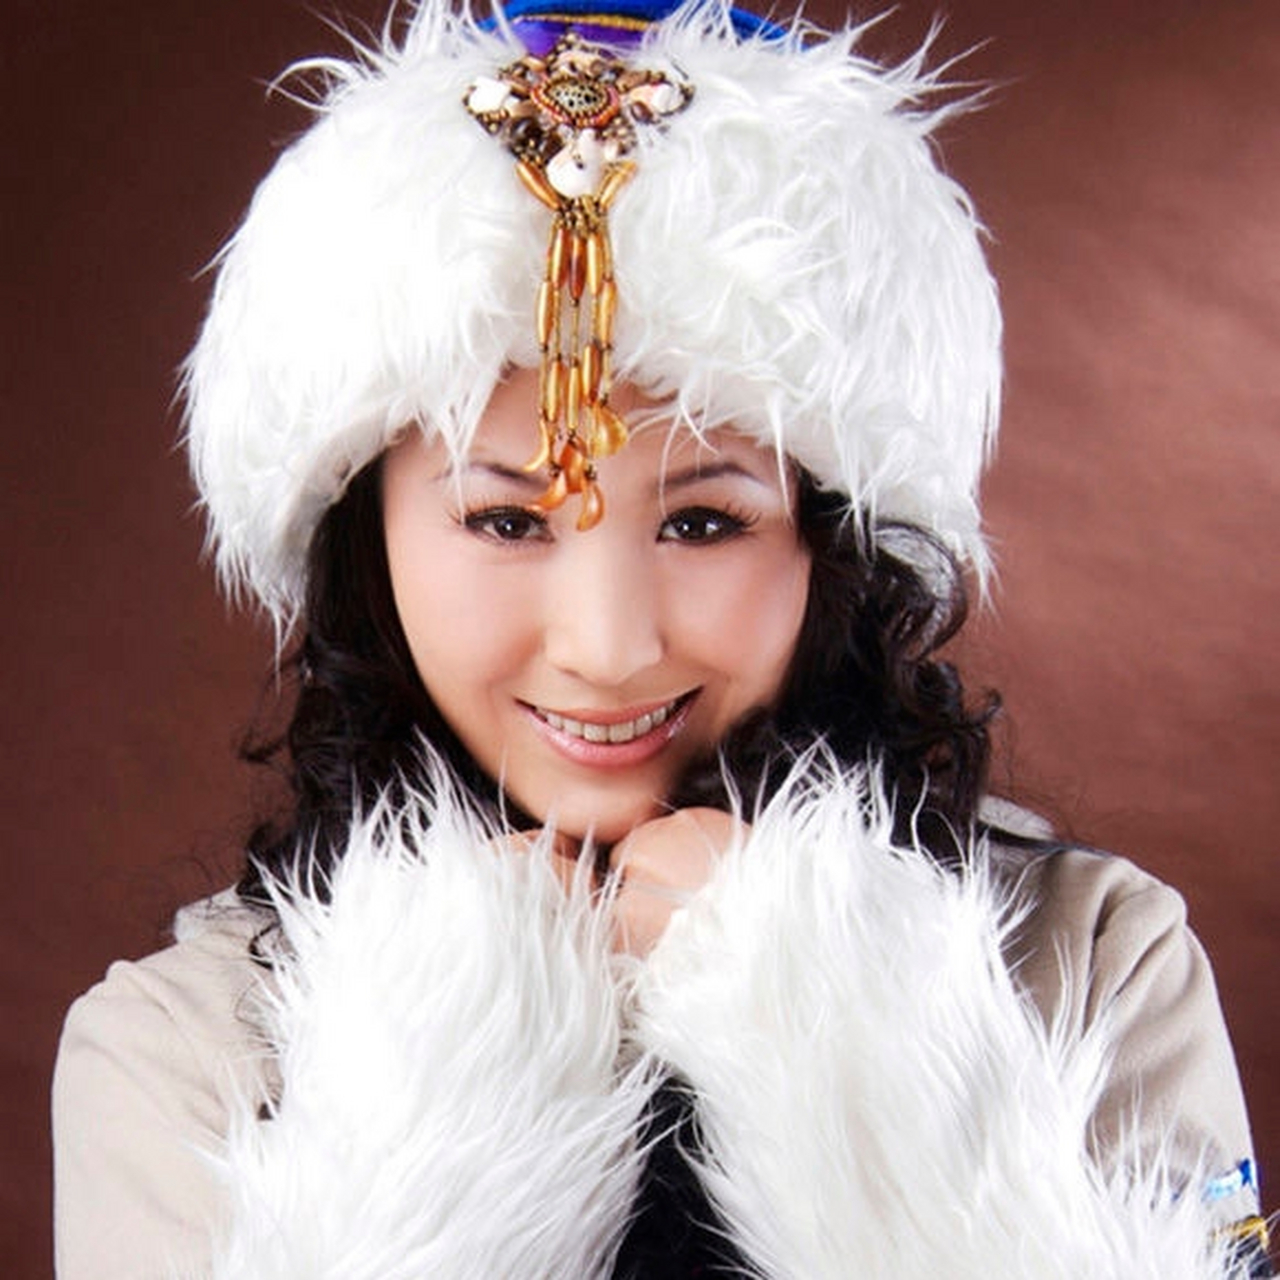 一个音乐公司推出了一首歌,叫《套马杆》,由公司歌手乌兰托娅演唱